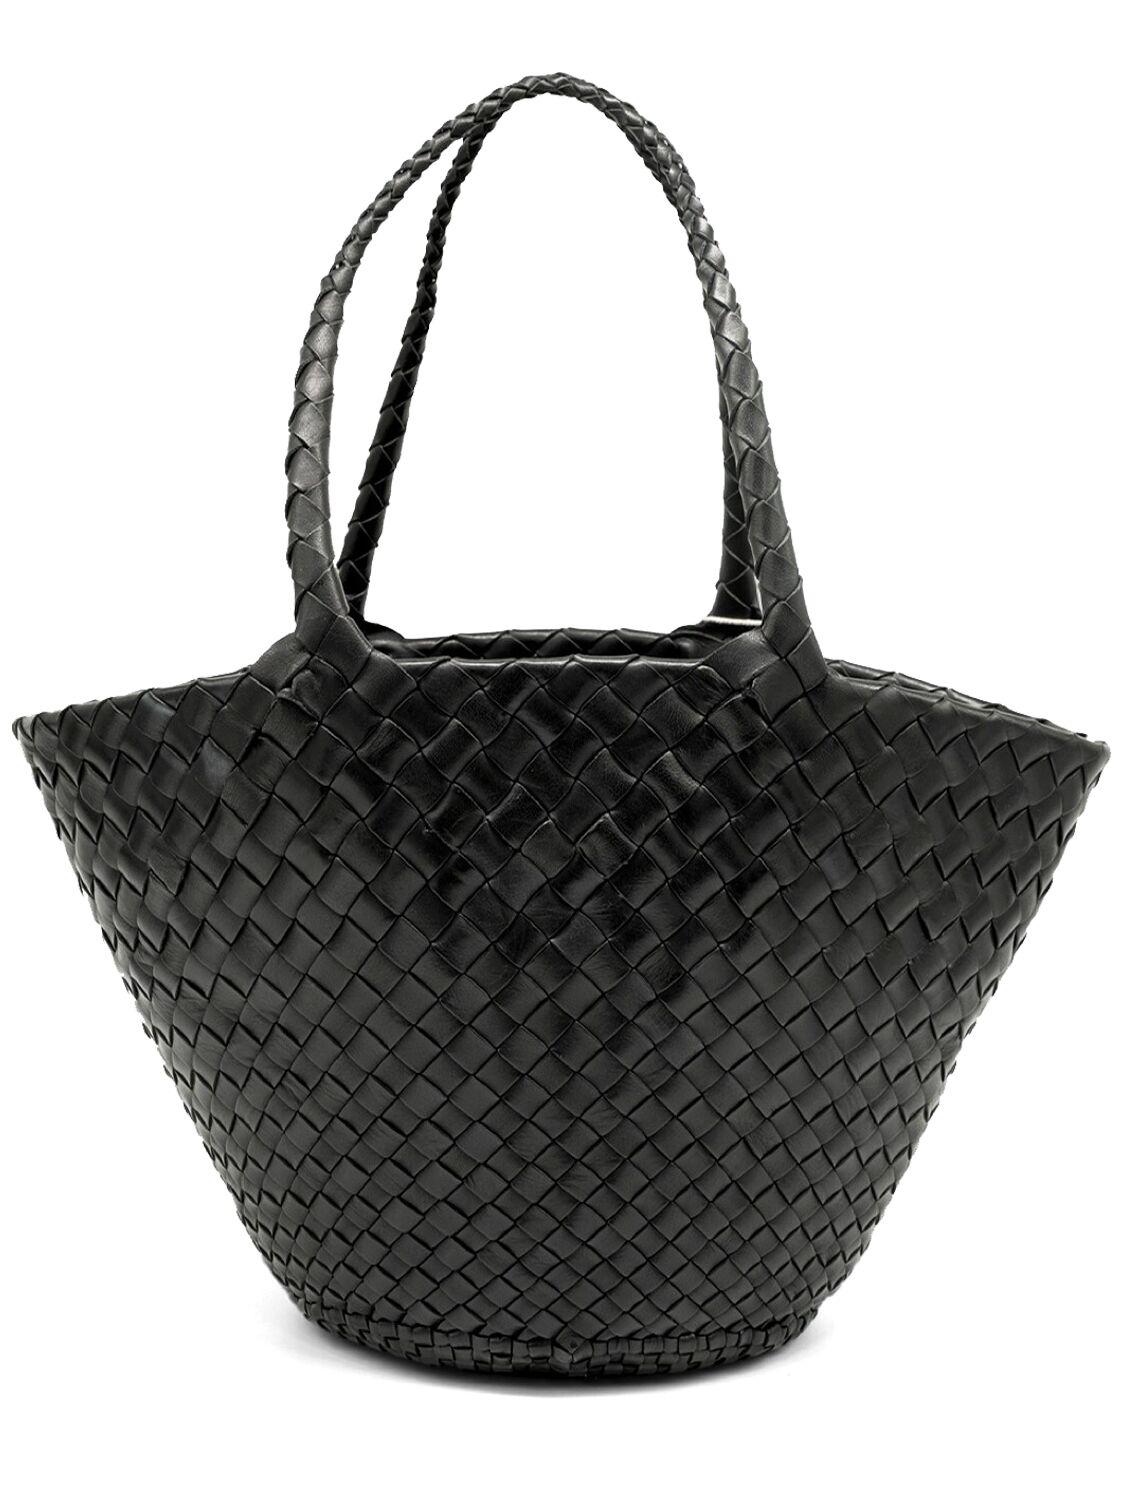 Egola Hand-braided Leather Tote Bag